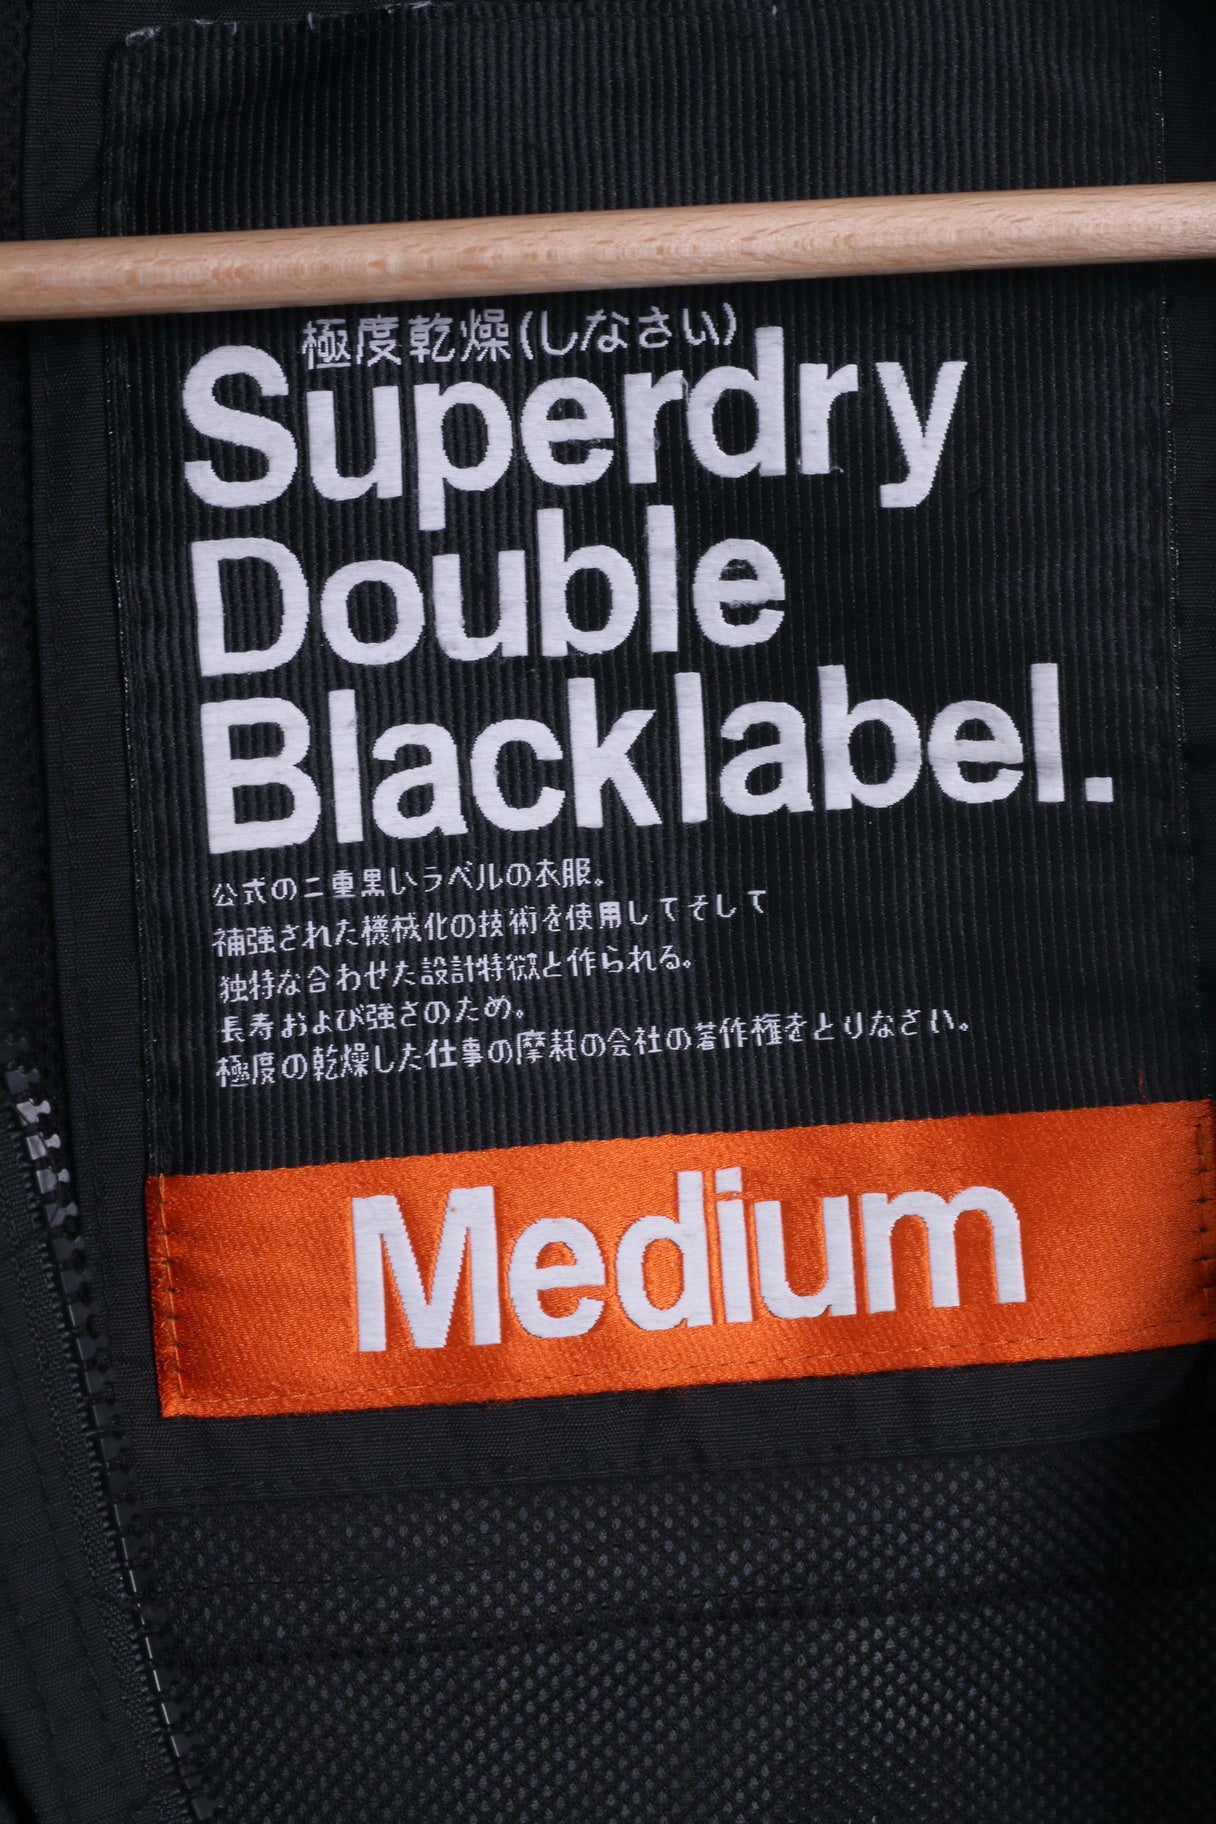 Giacca da donna M Superdry in nylon nero leggero con 3 cerniere Giappone